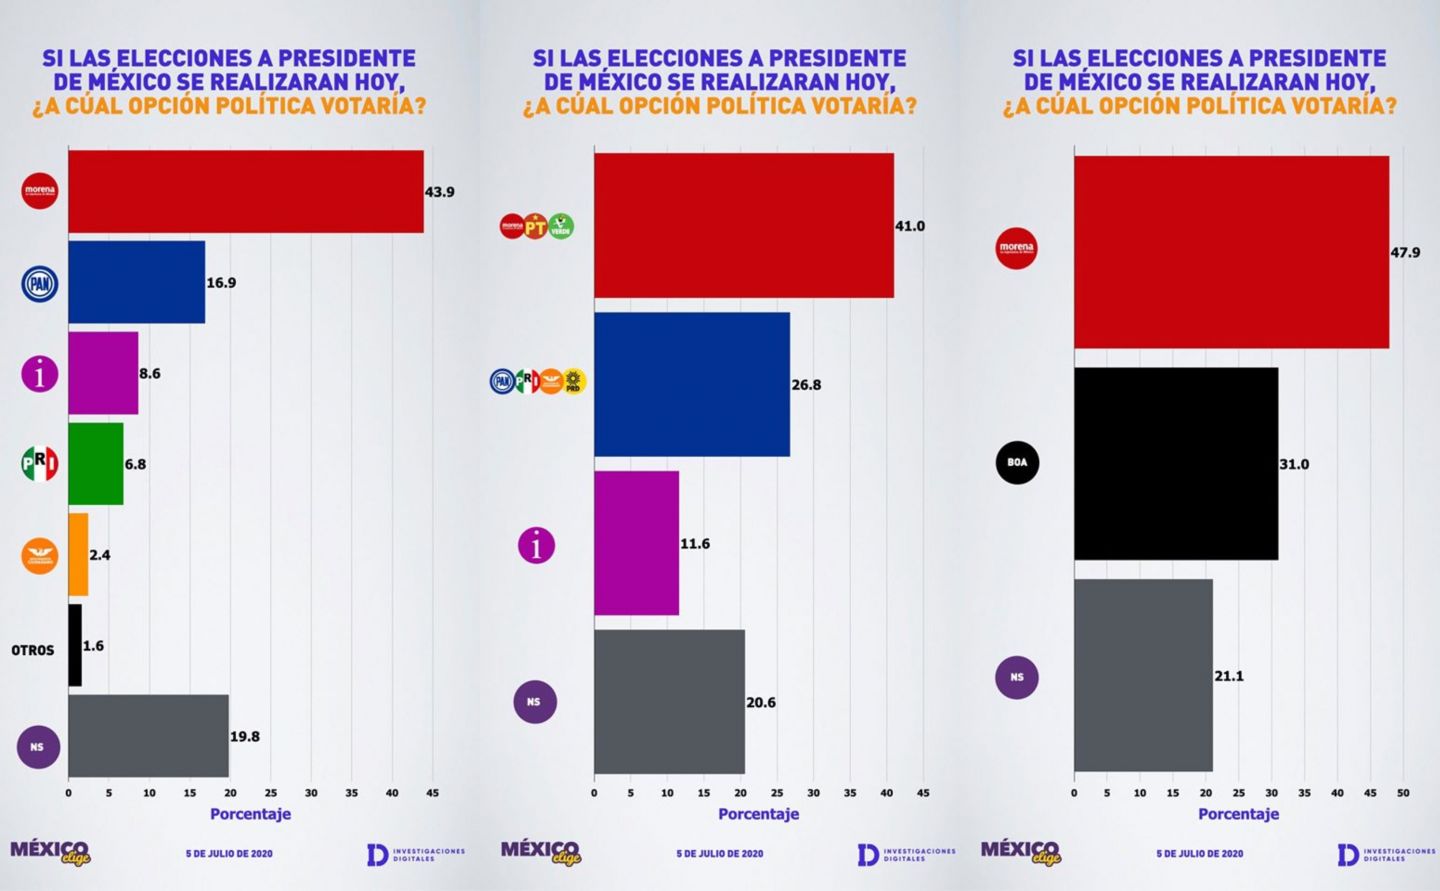 Fracasa BOA: Morena obtendría 6 de 10 votos compitiendo contra todos los demás partidos juntos